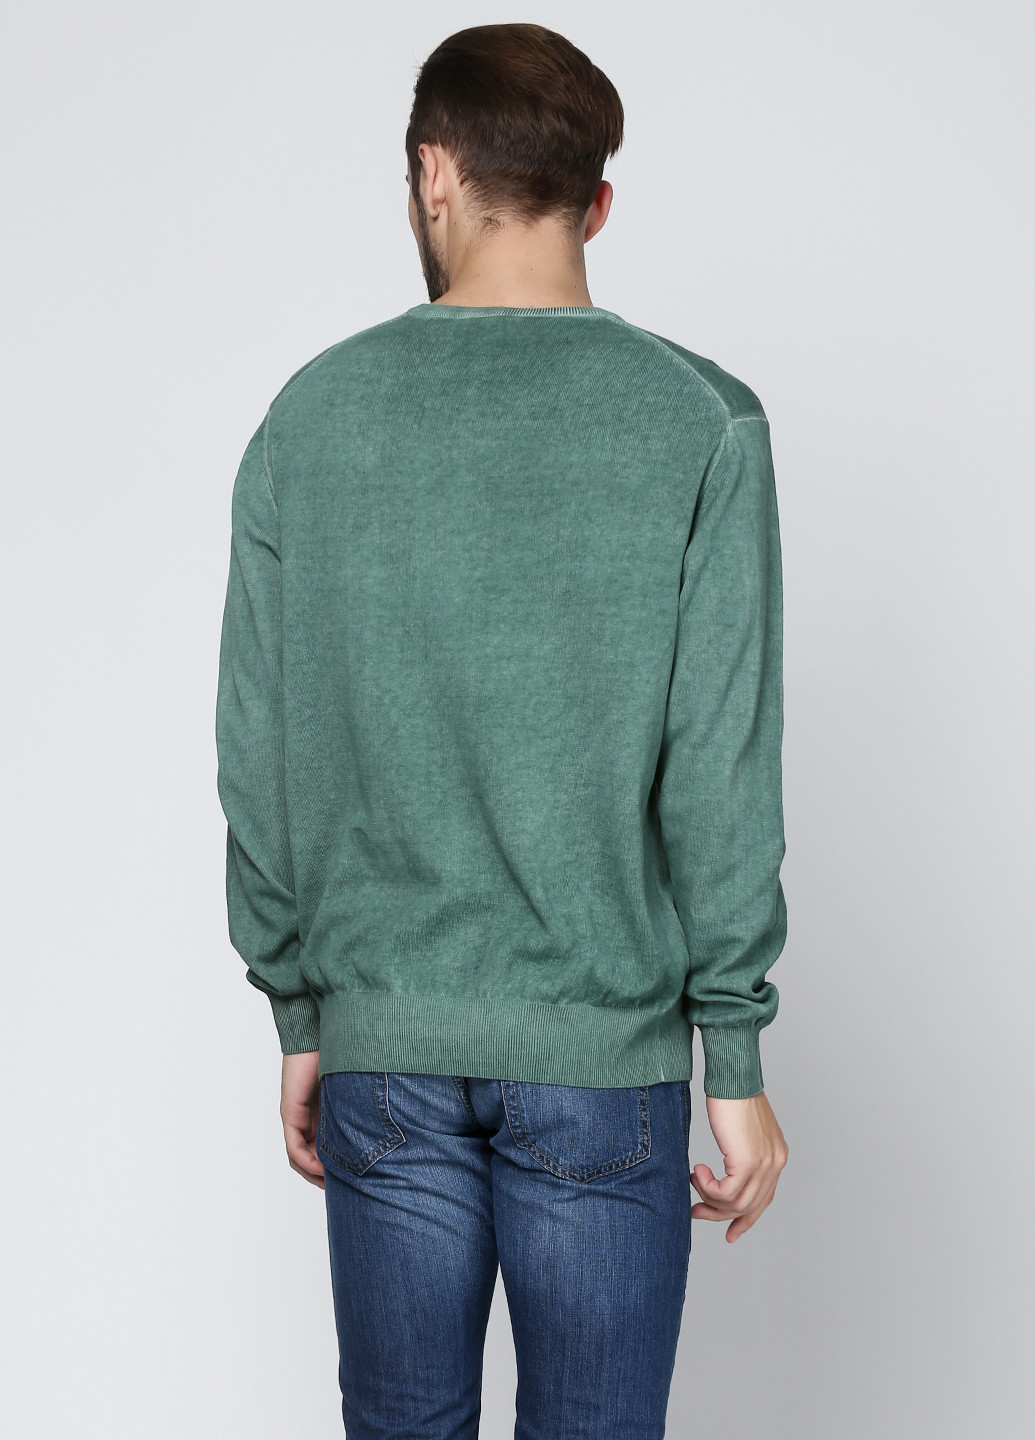 Светло-зеленый демисезонный пуловер пуловер Cashmere